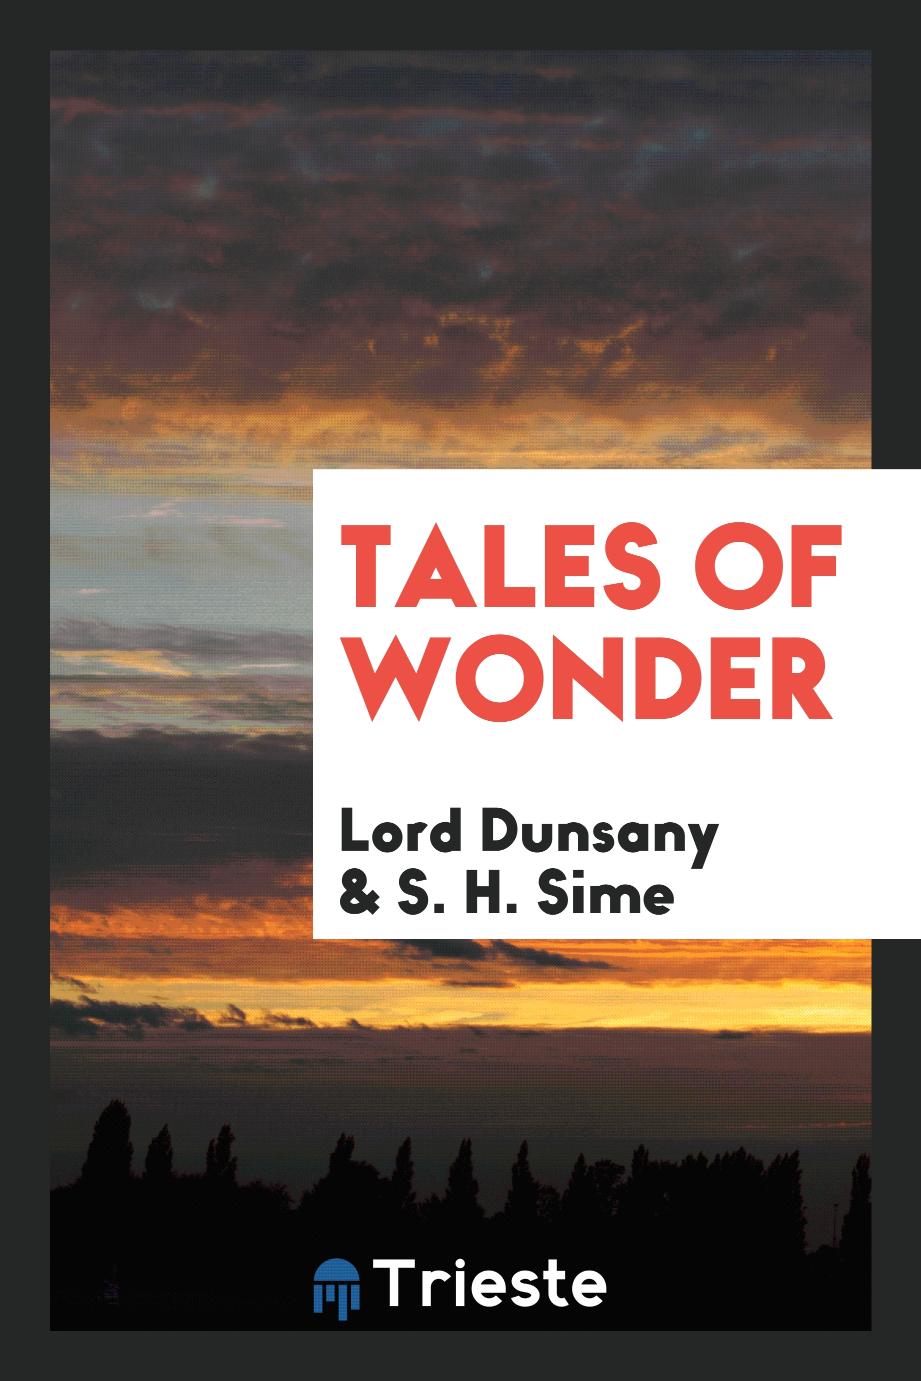 Tales of wonder